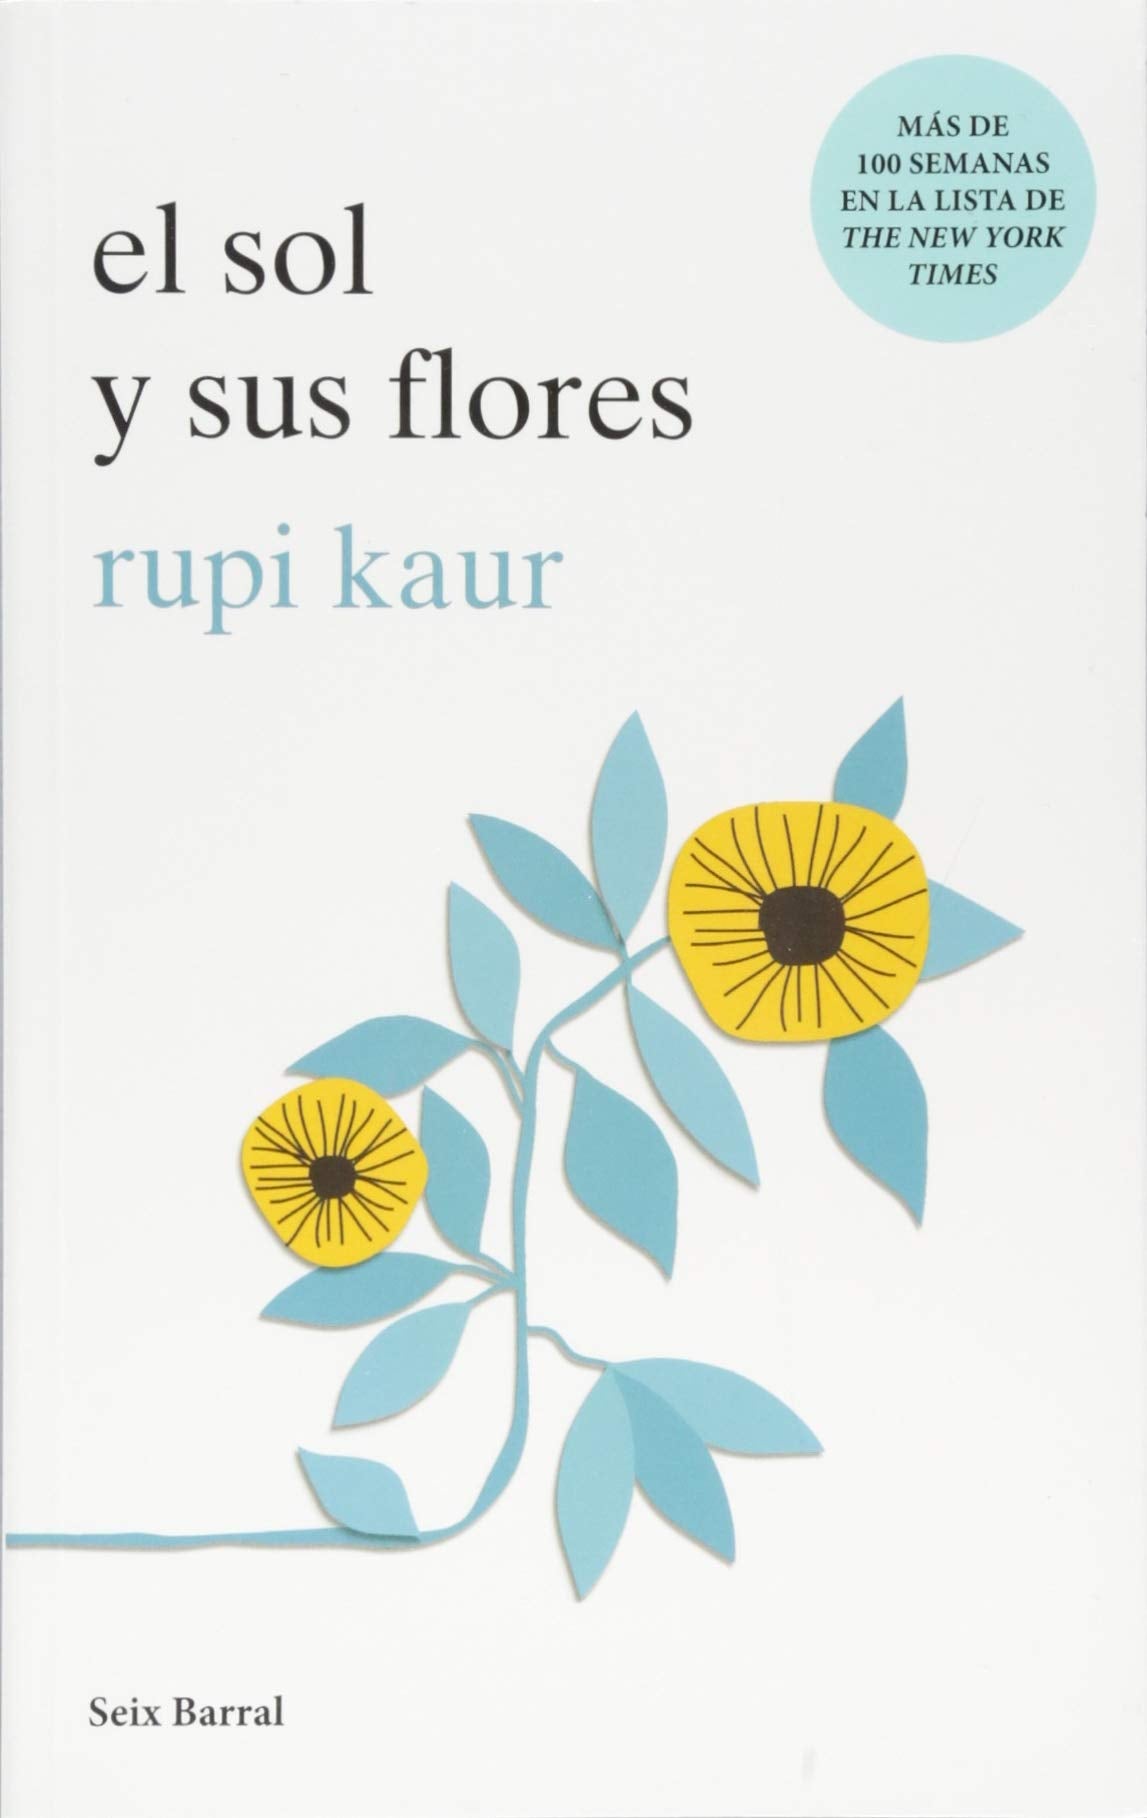 El sol y sus flores (Spanish Edition - Paperback)